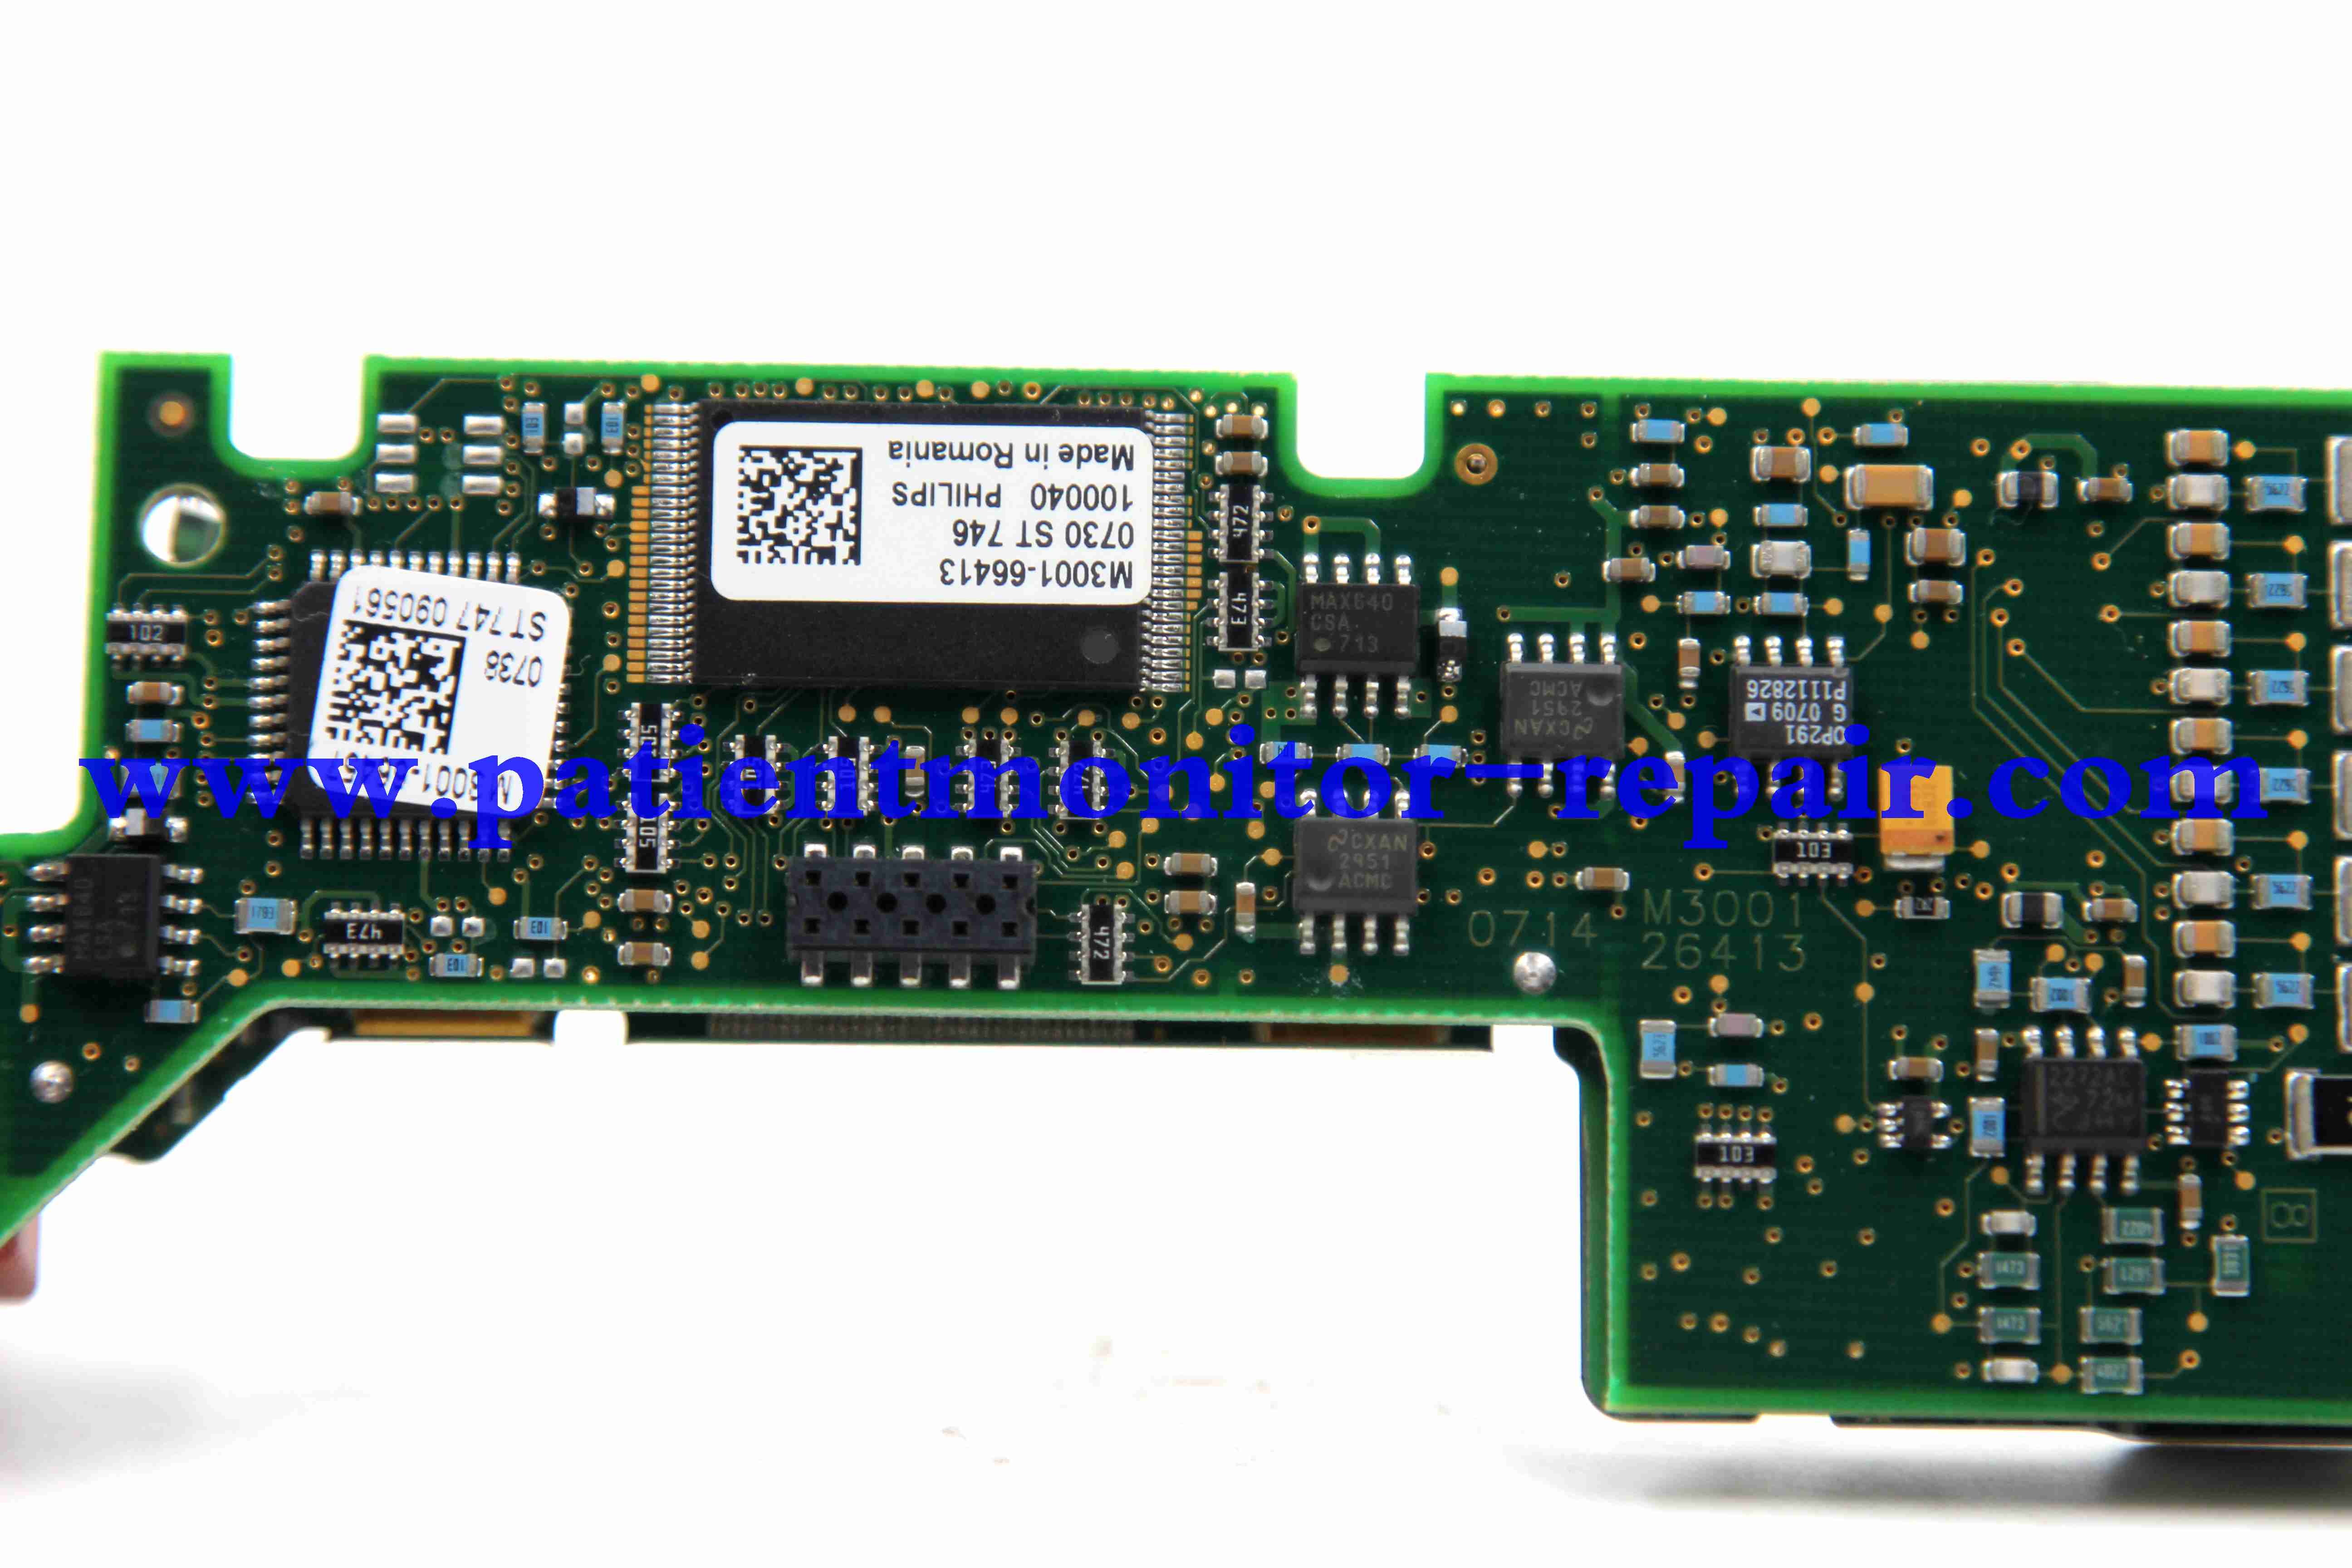  M3001A Parameter module core board M3001-66413(M3001-26413)